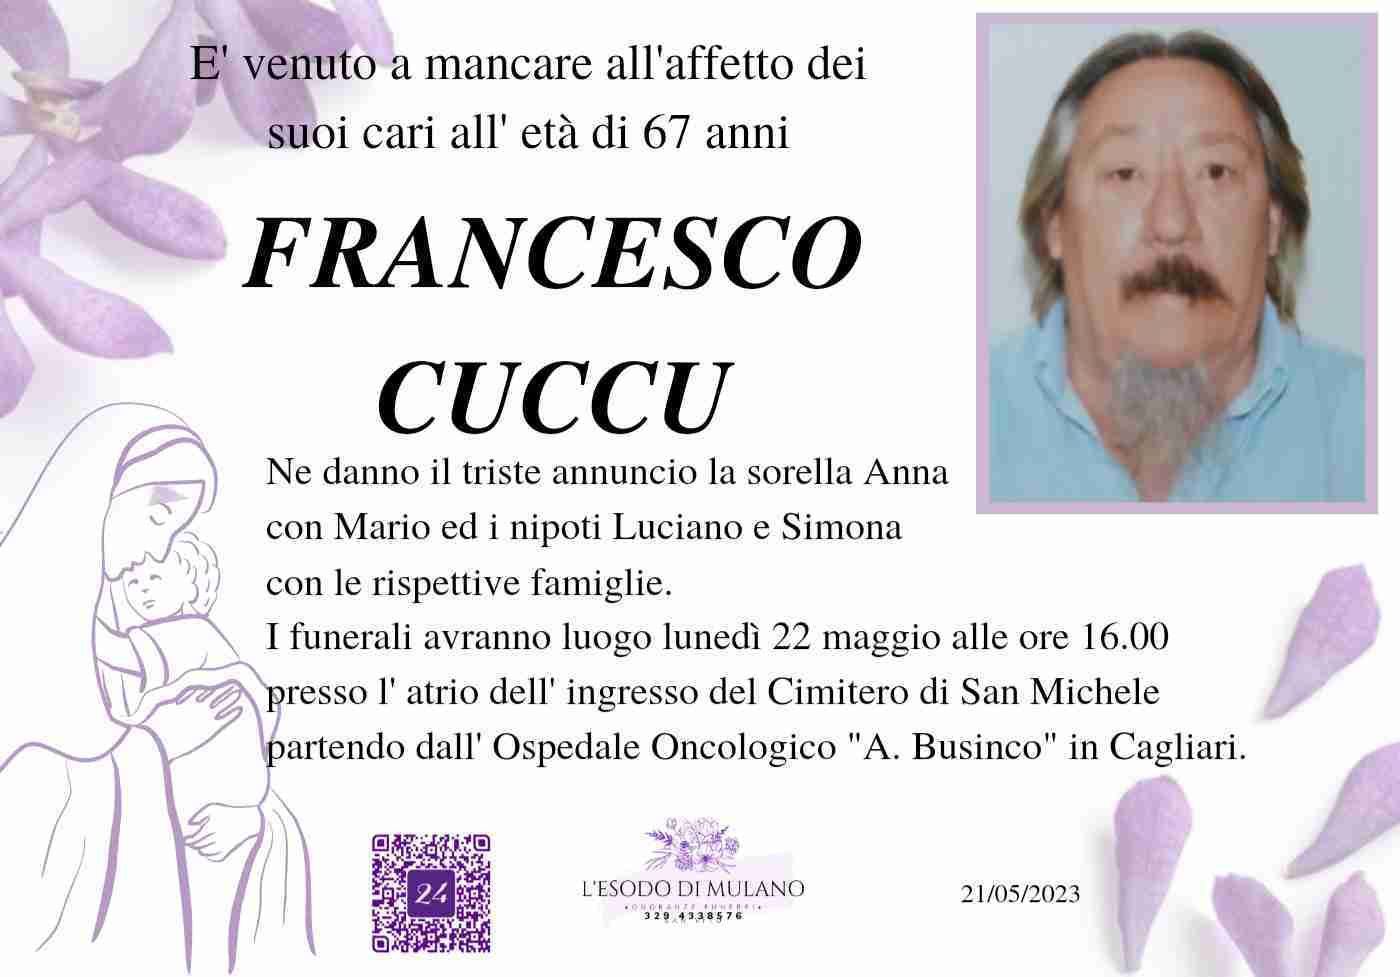 Francesco Cuccu